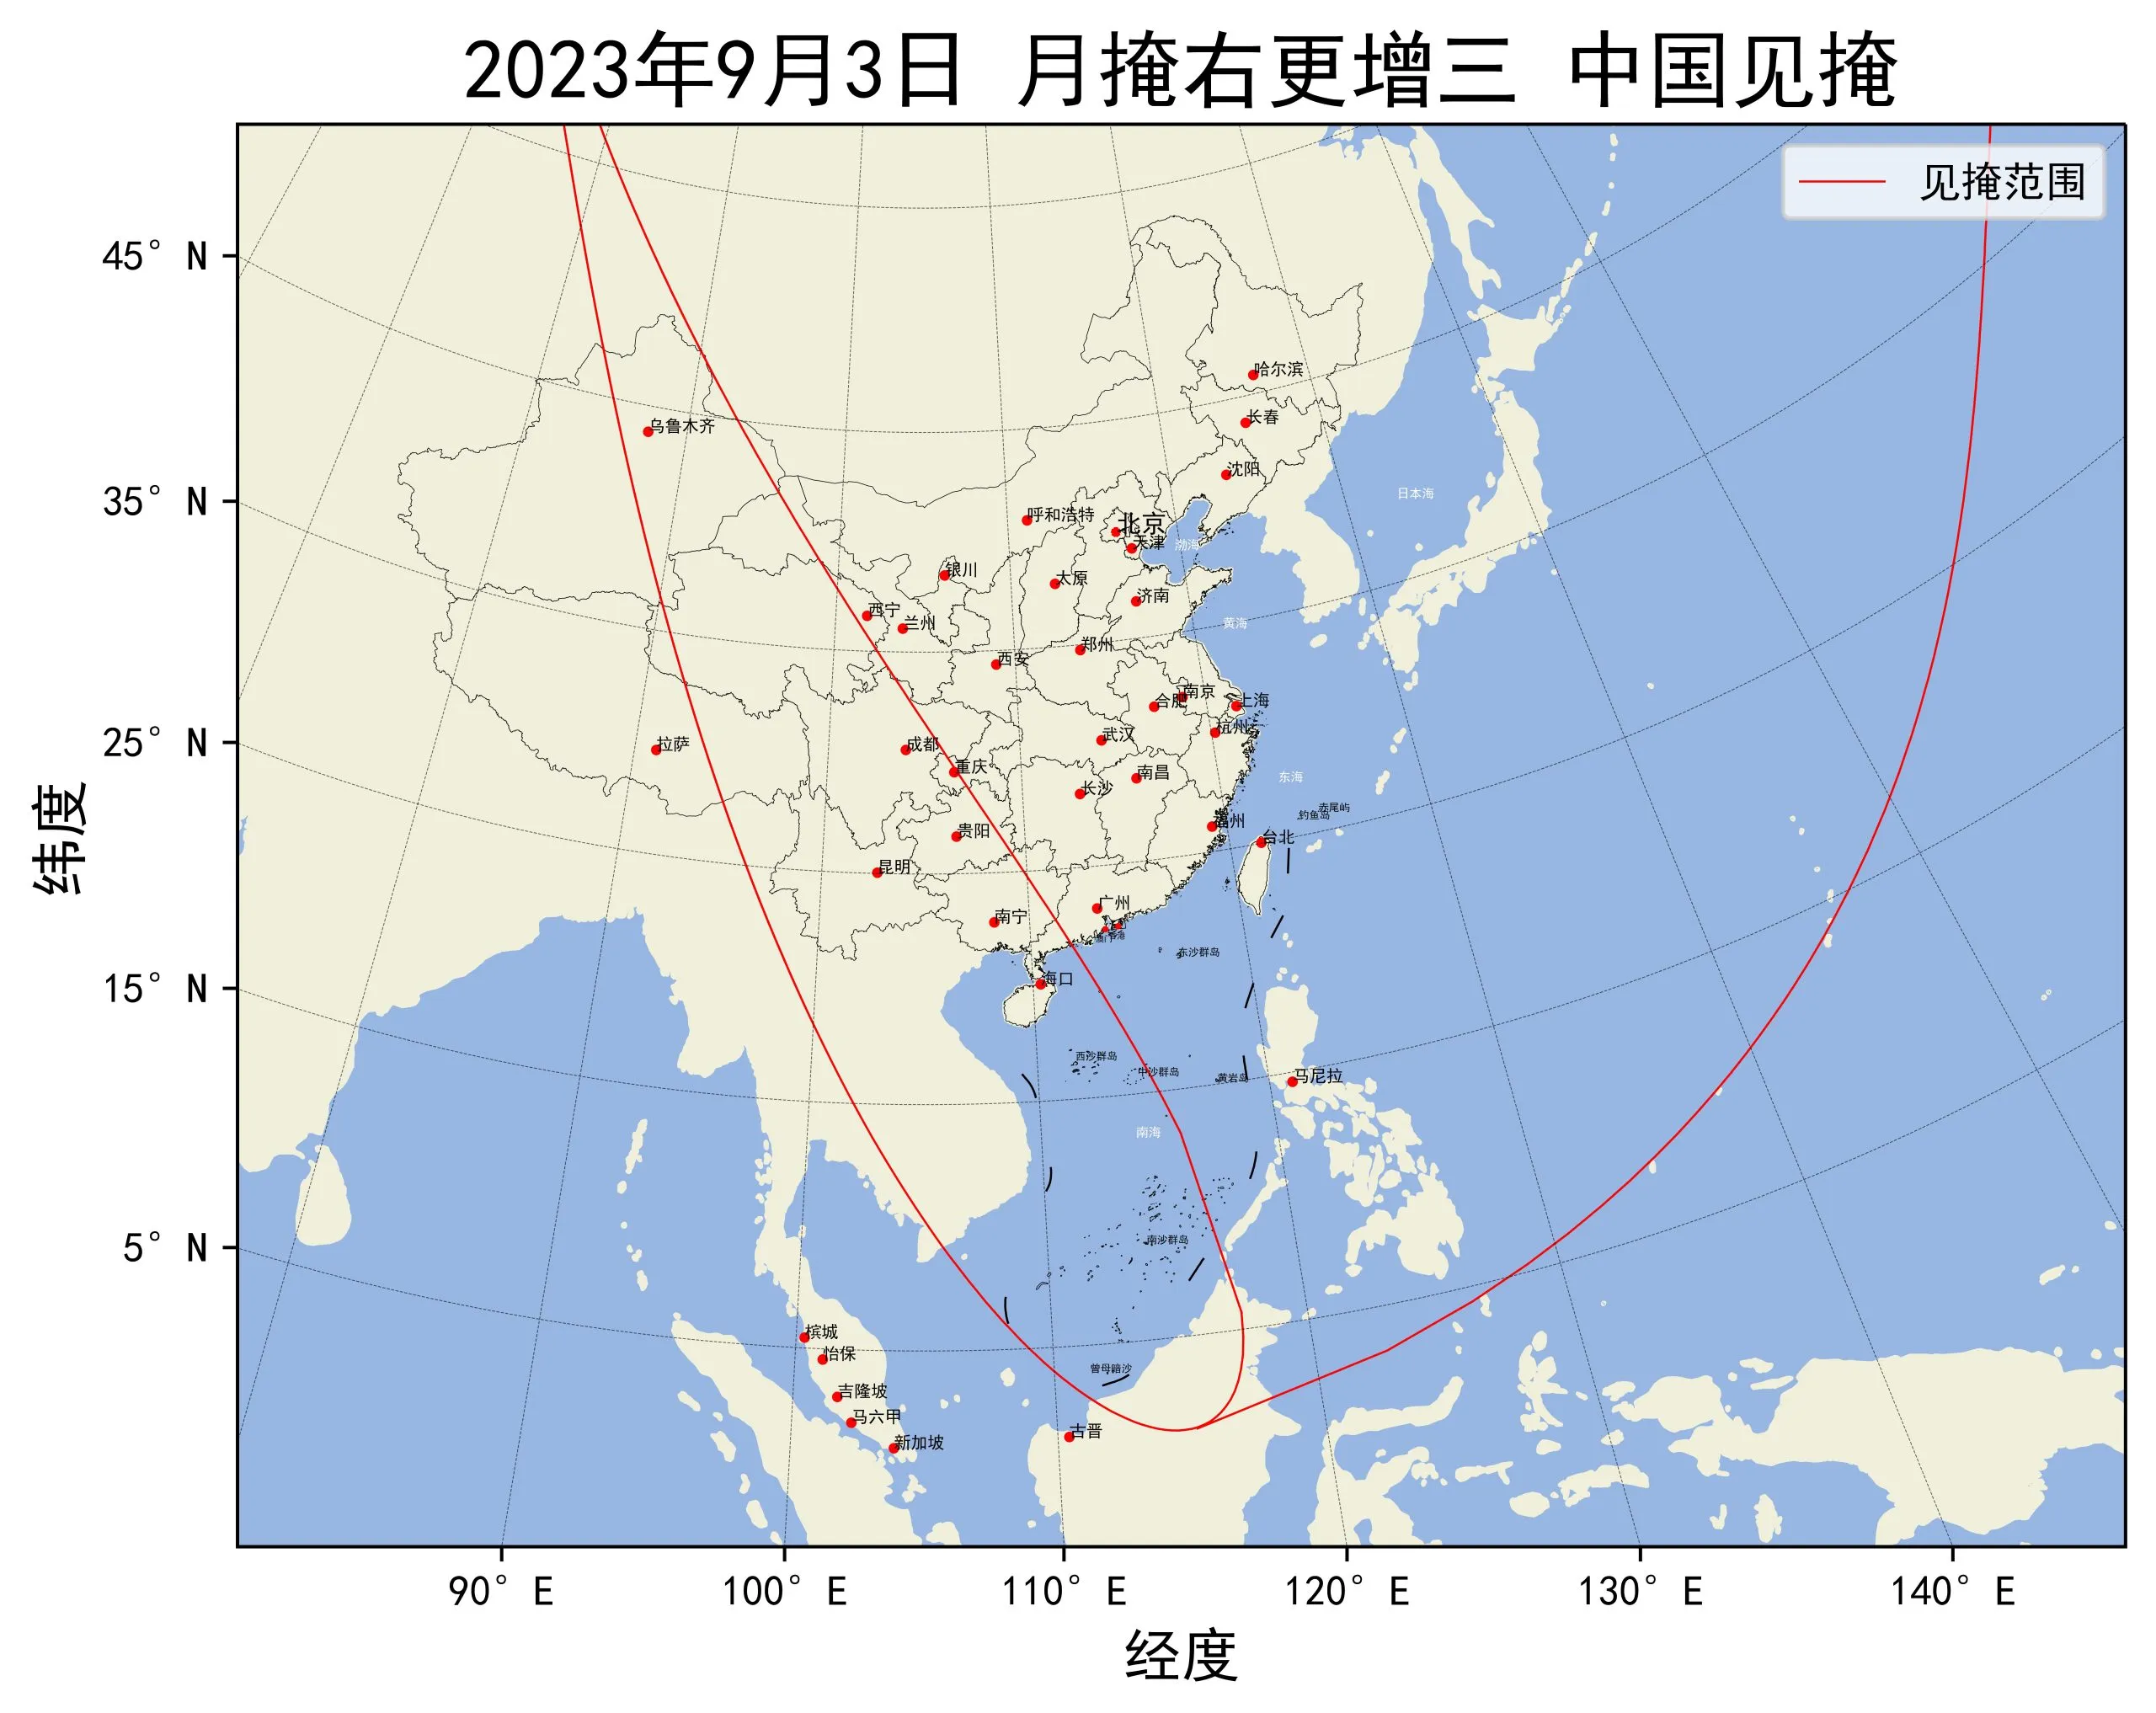 2023年9月3日月掩右更增三中国见掩